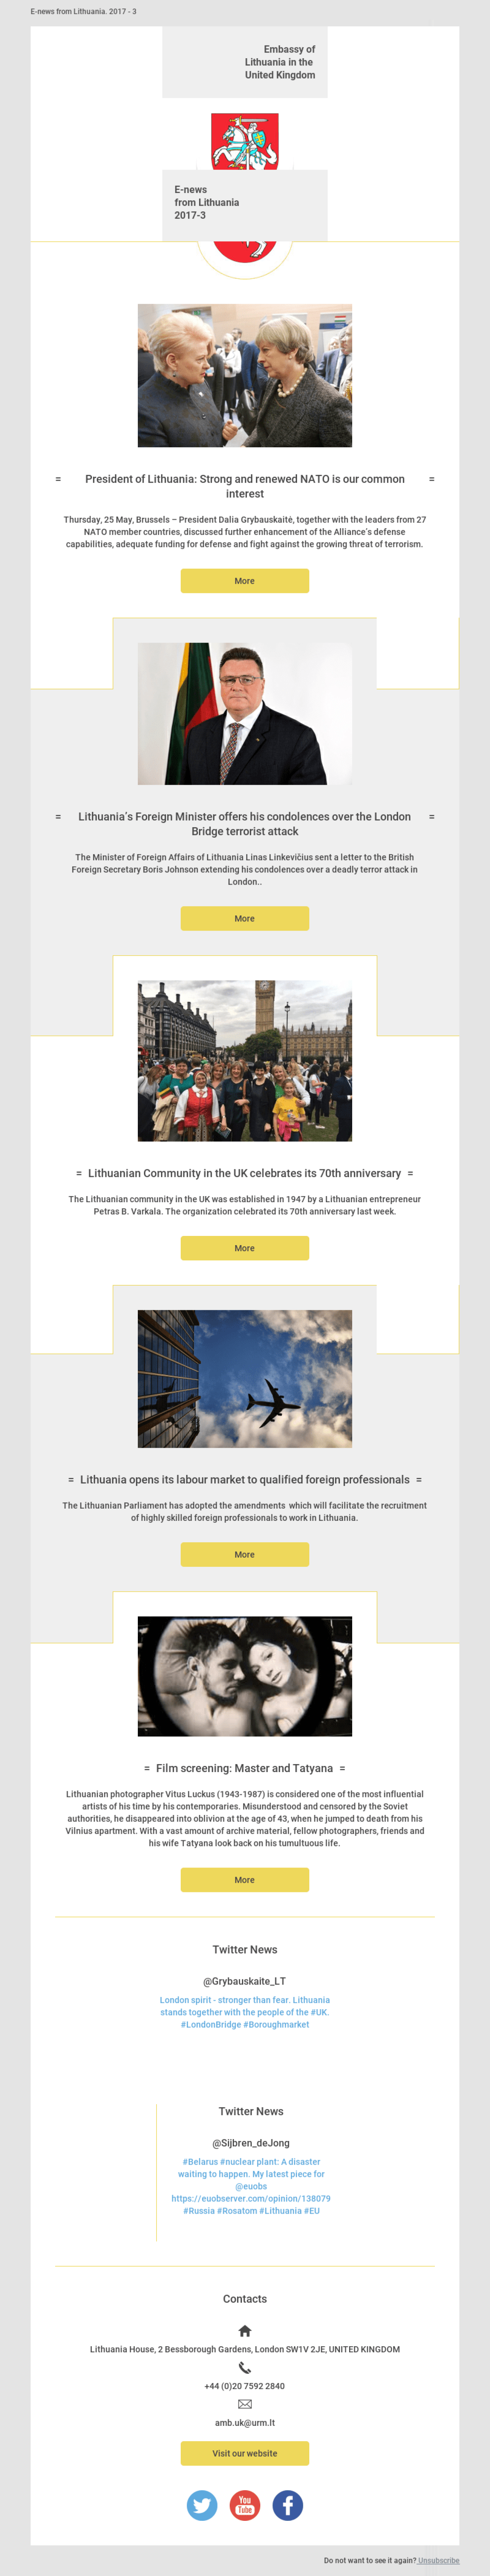 Plantilla personalizada de la embajada de Lituania ejemplo - Diseño de MailerLite